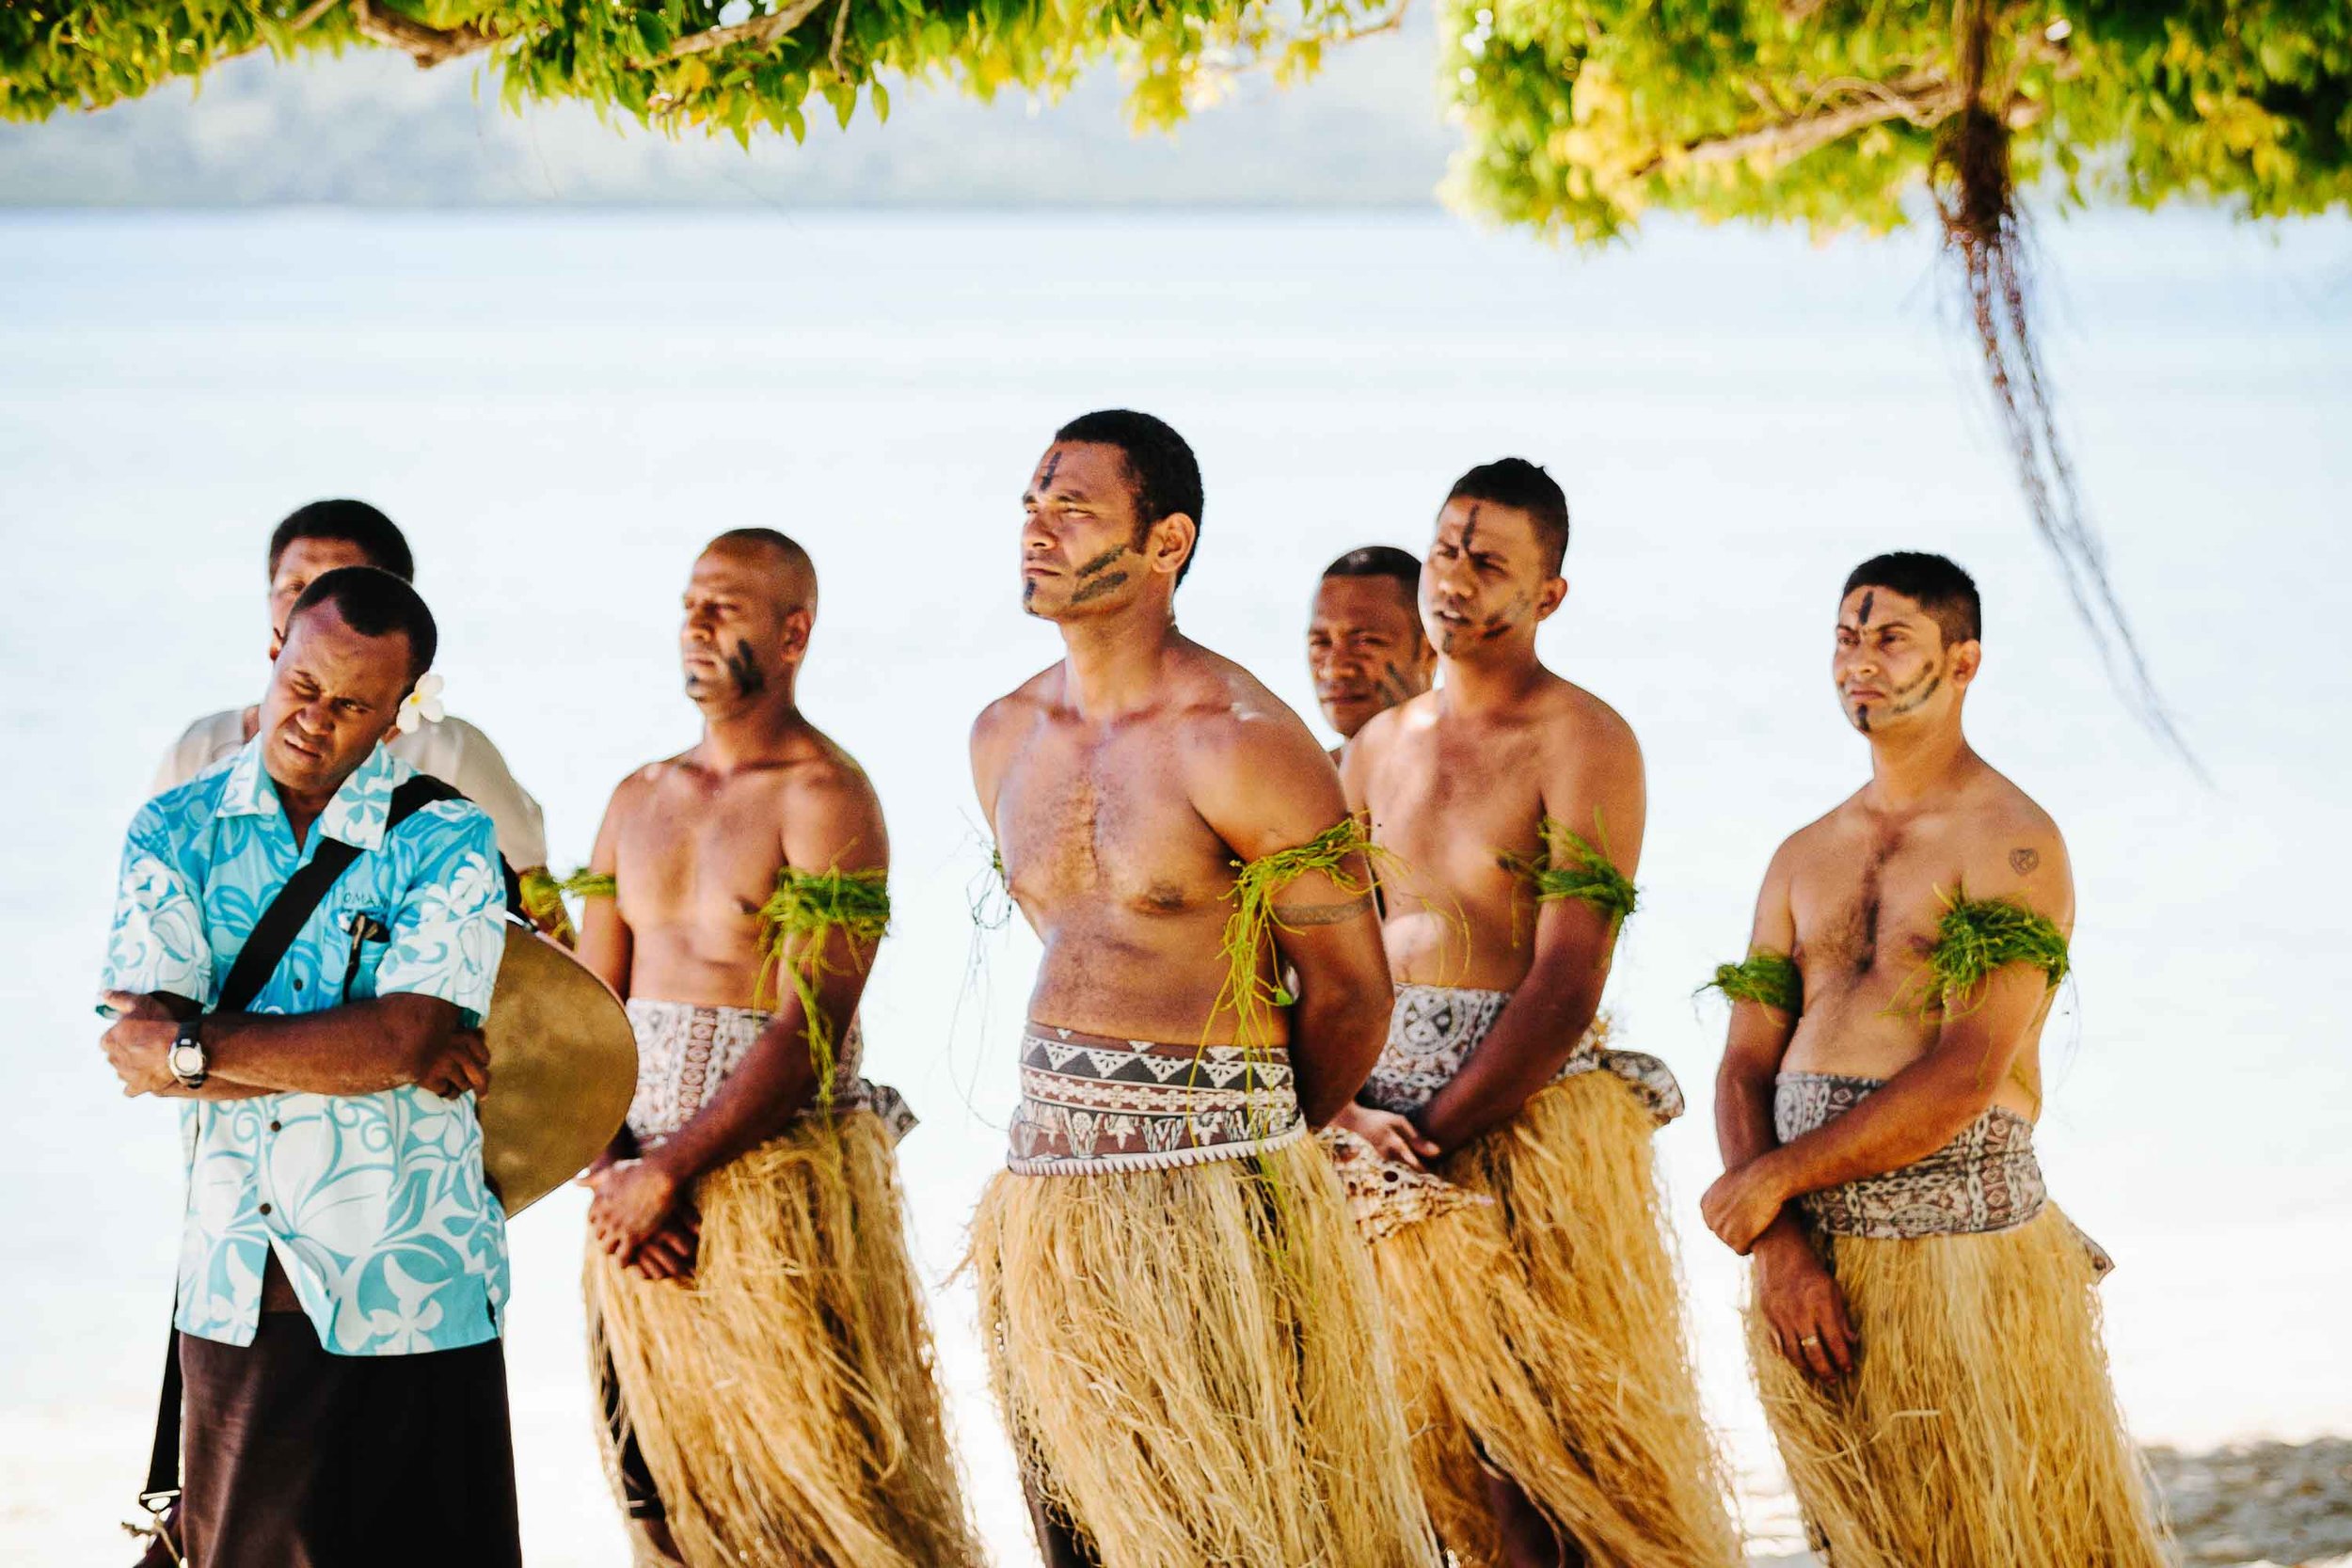 Fijian warriors observing ceremony